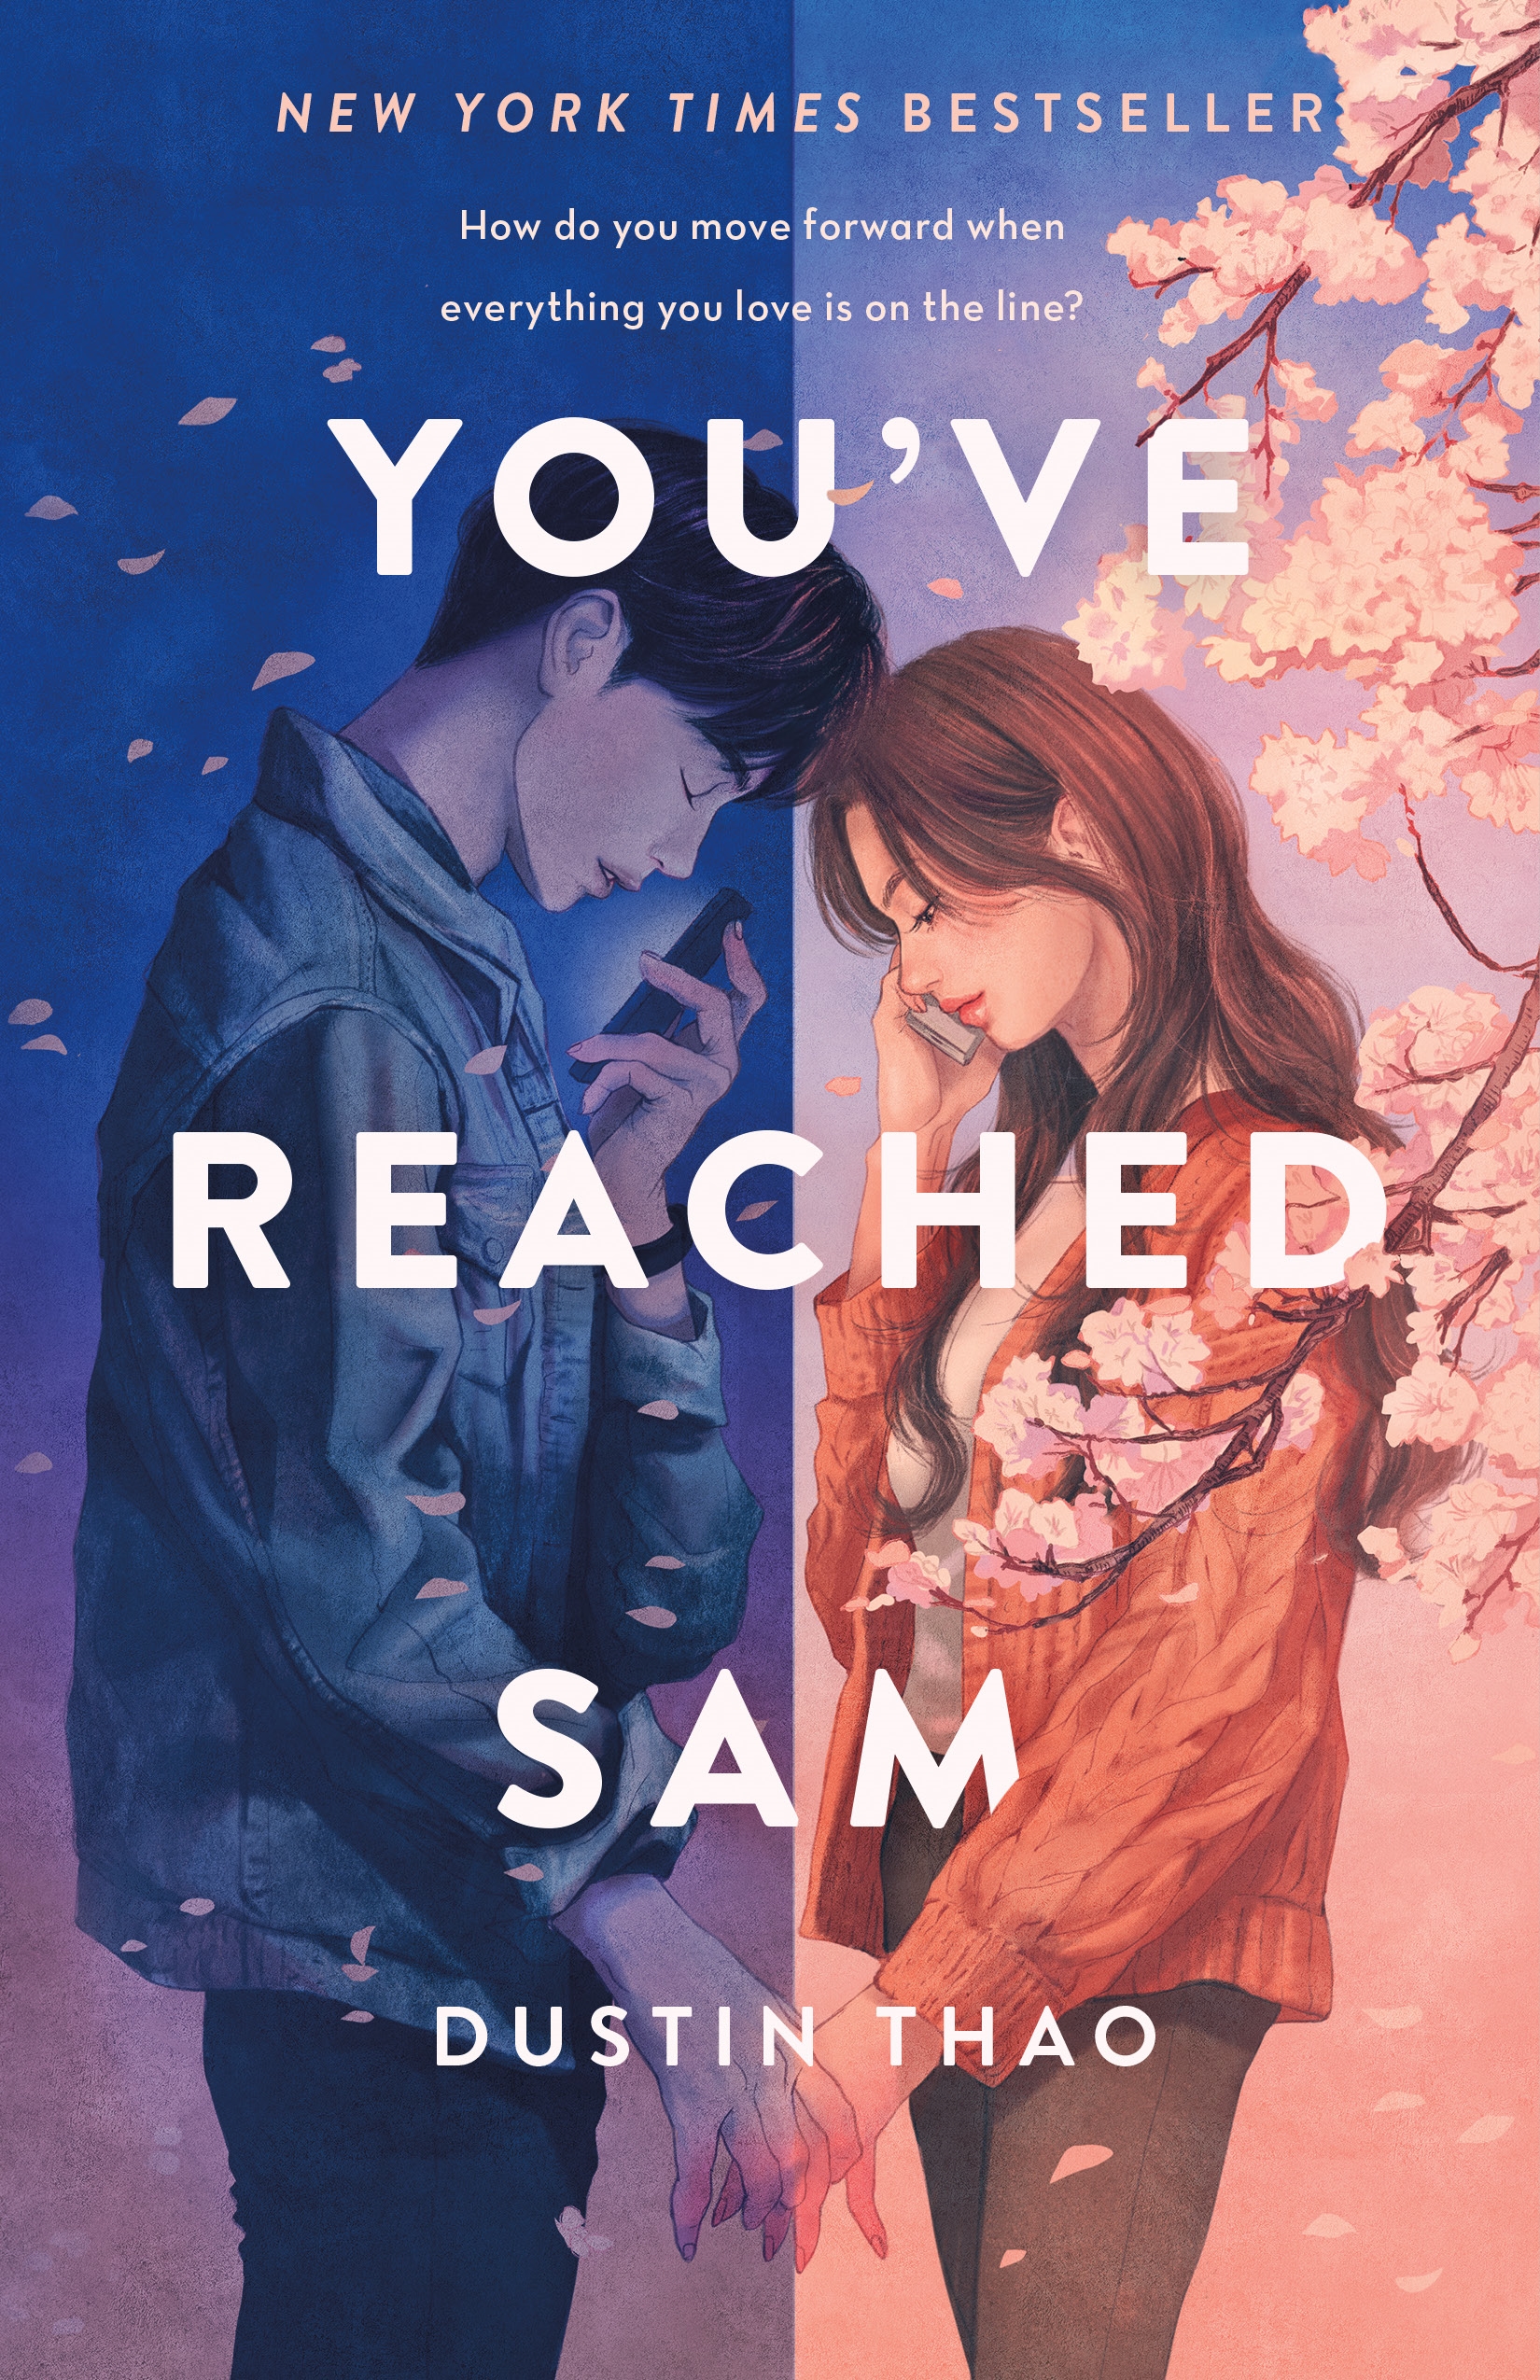 You've reached Sam a novel